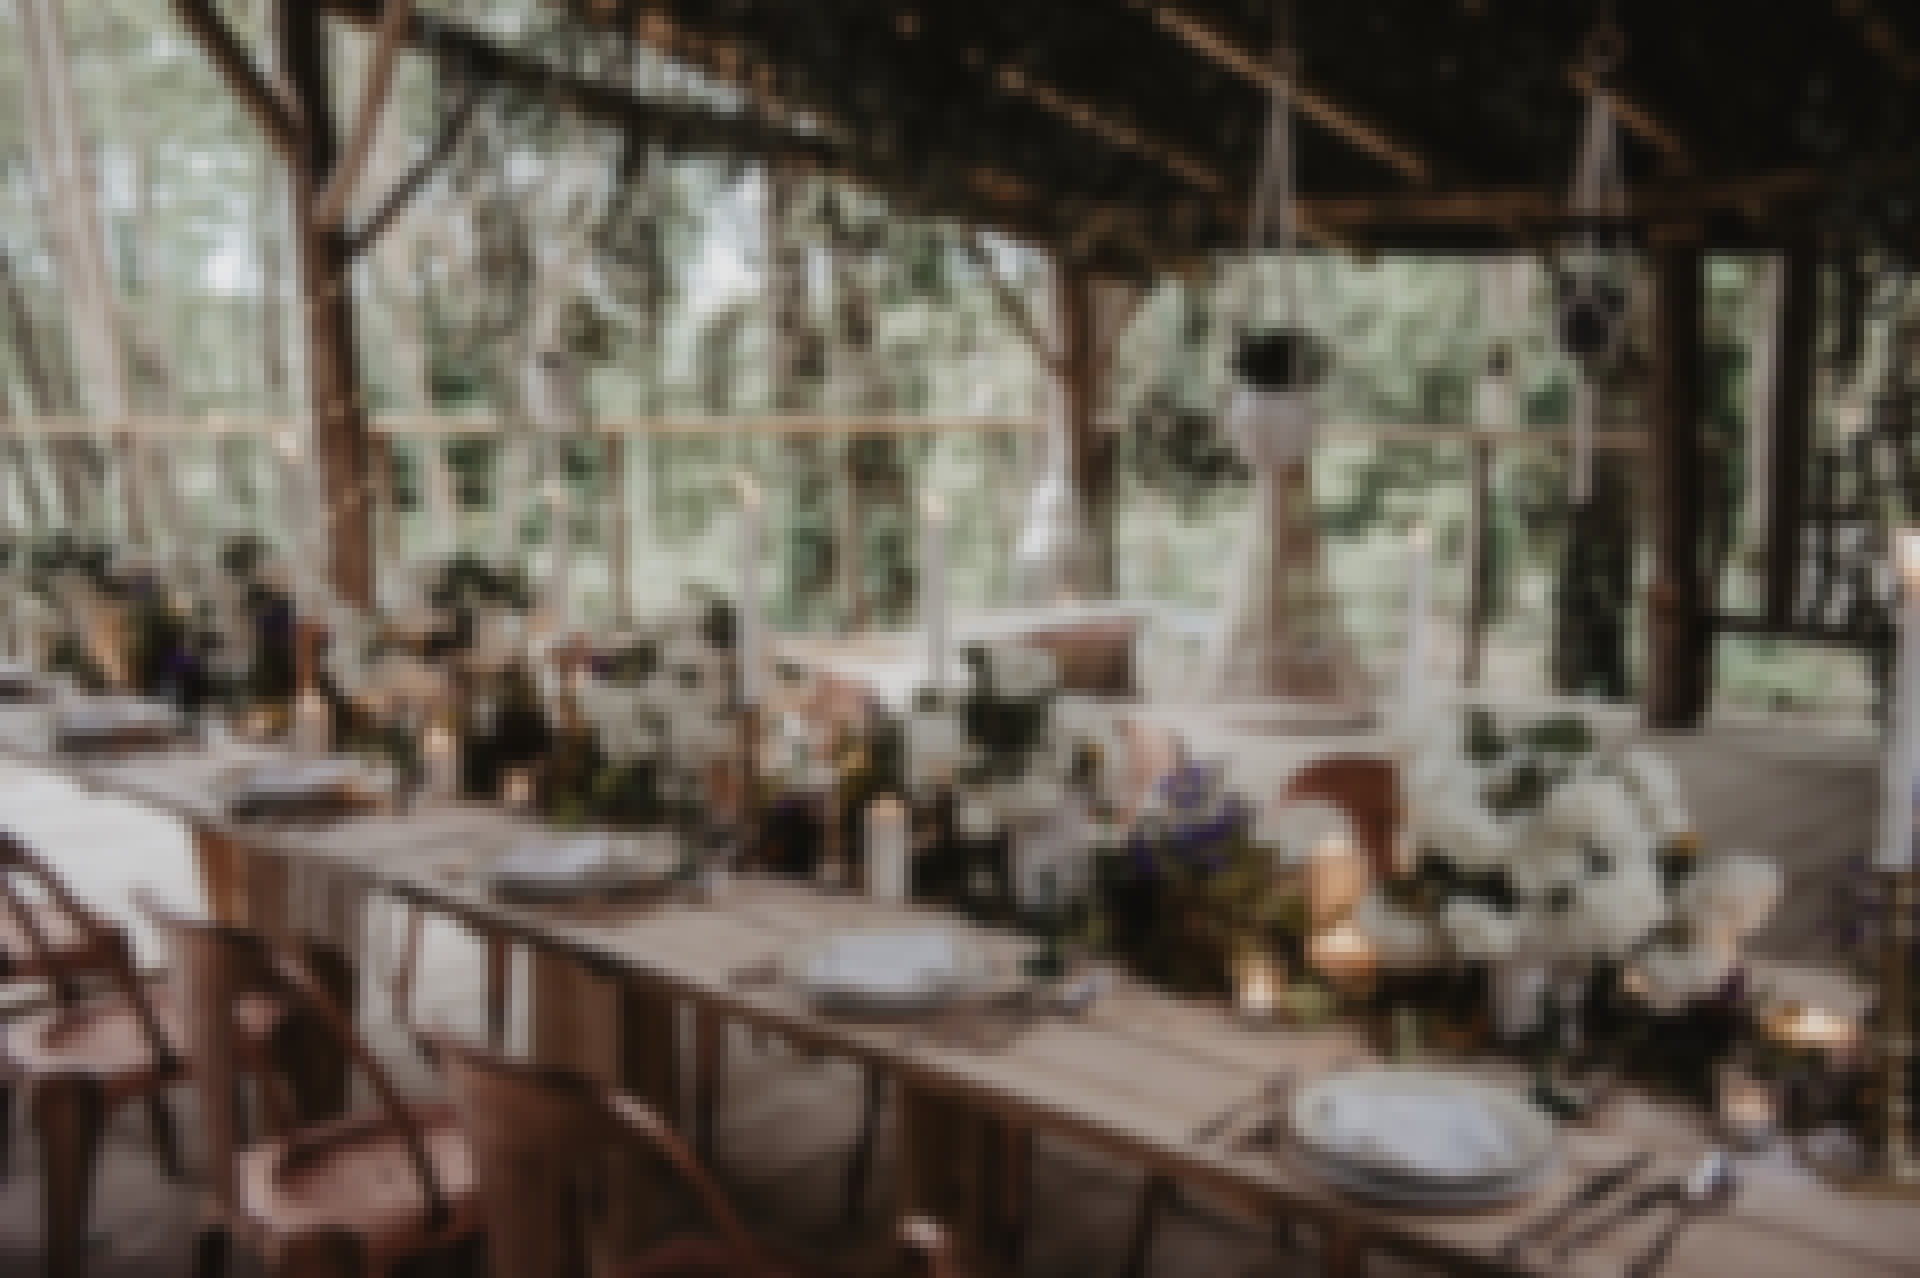 Décoration et tables dressées pour un mariage organisé en pleine nature dans un bois